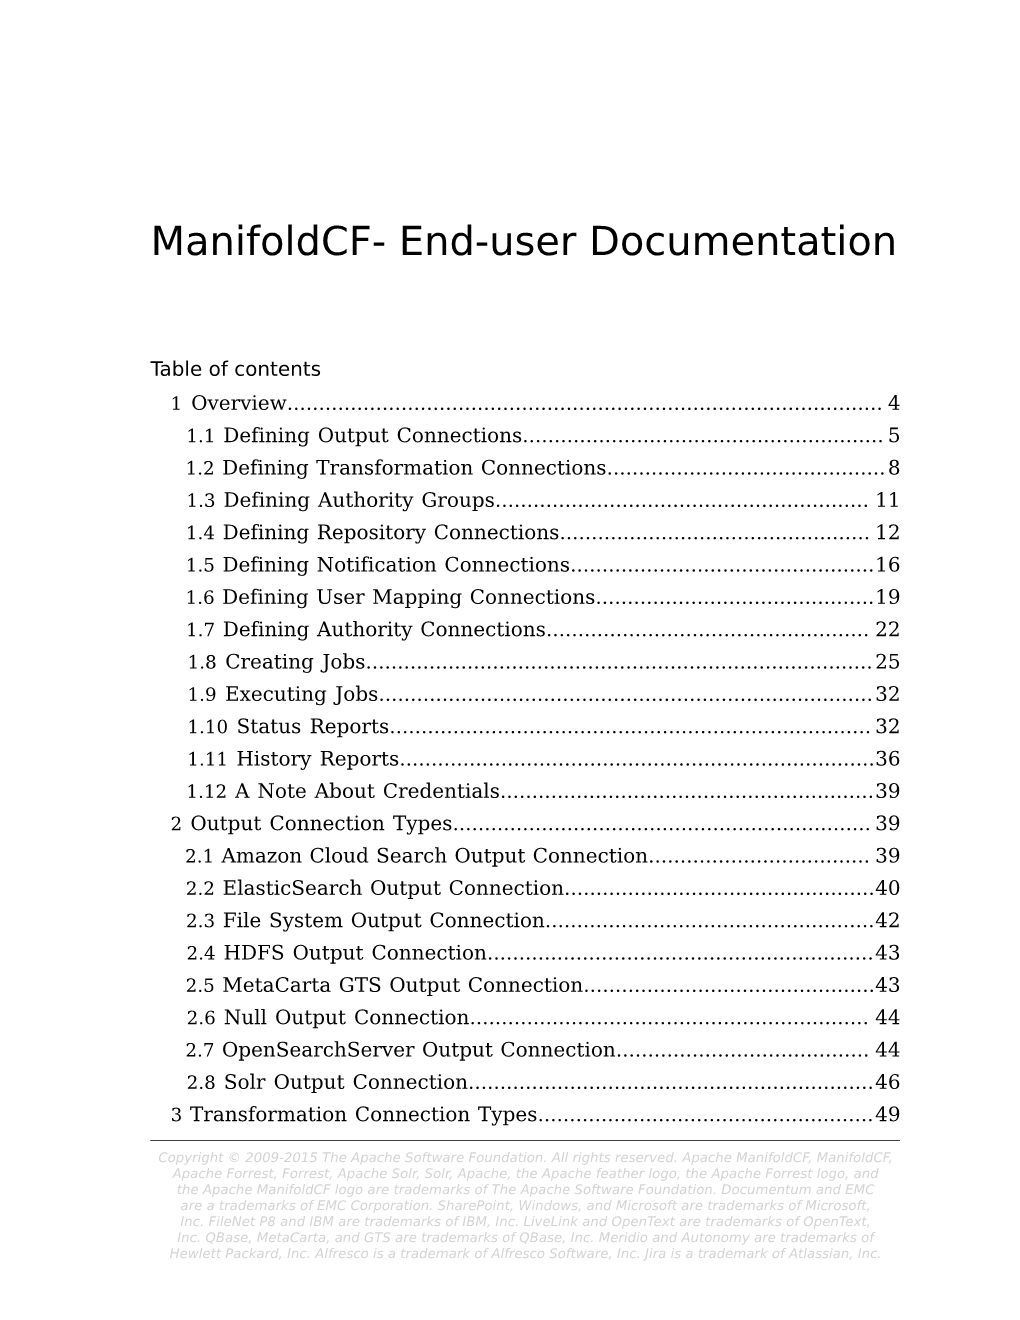 End-User Documentation